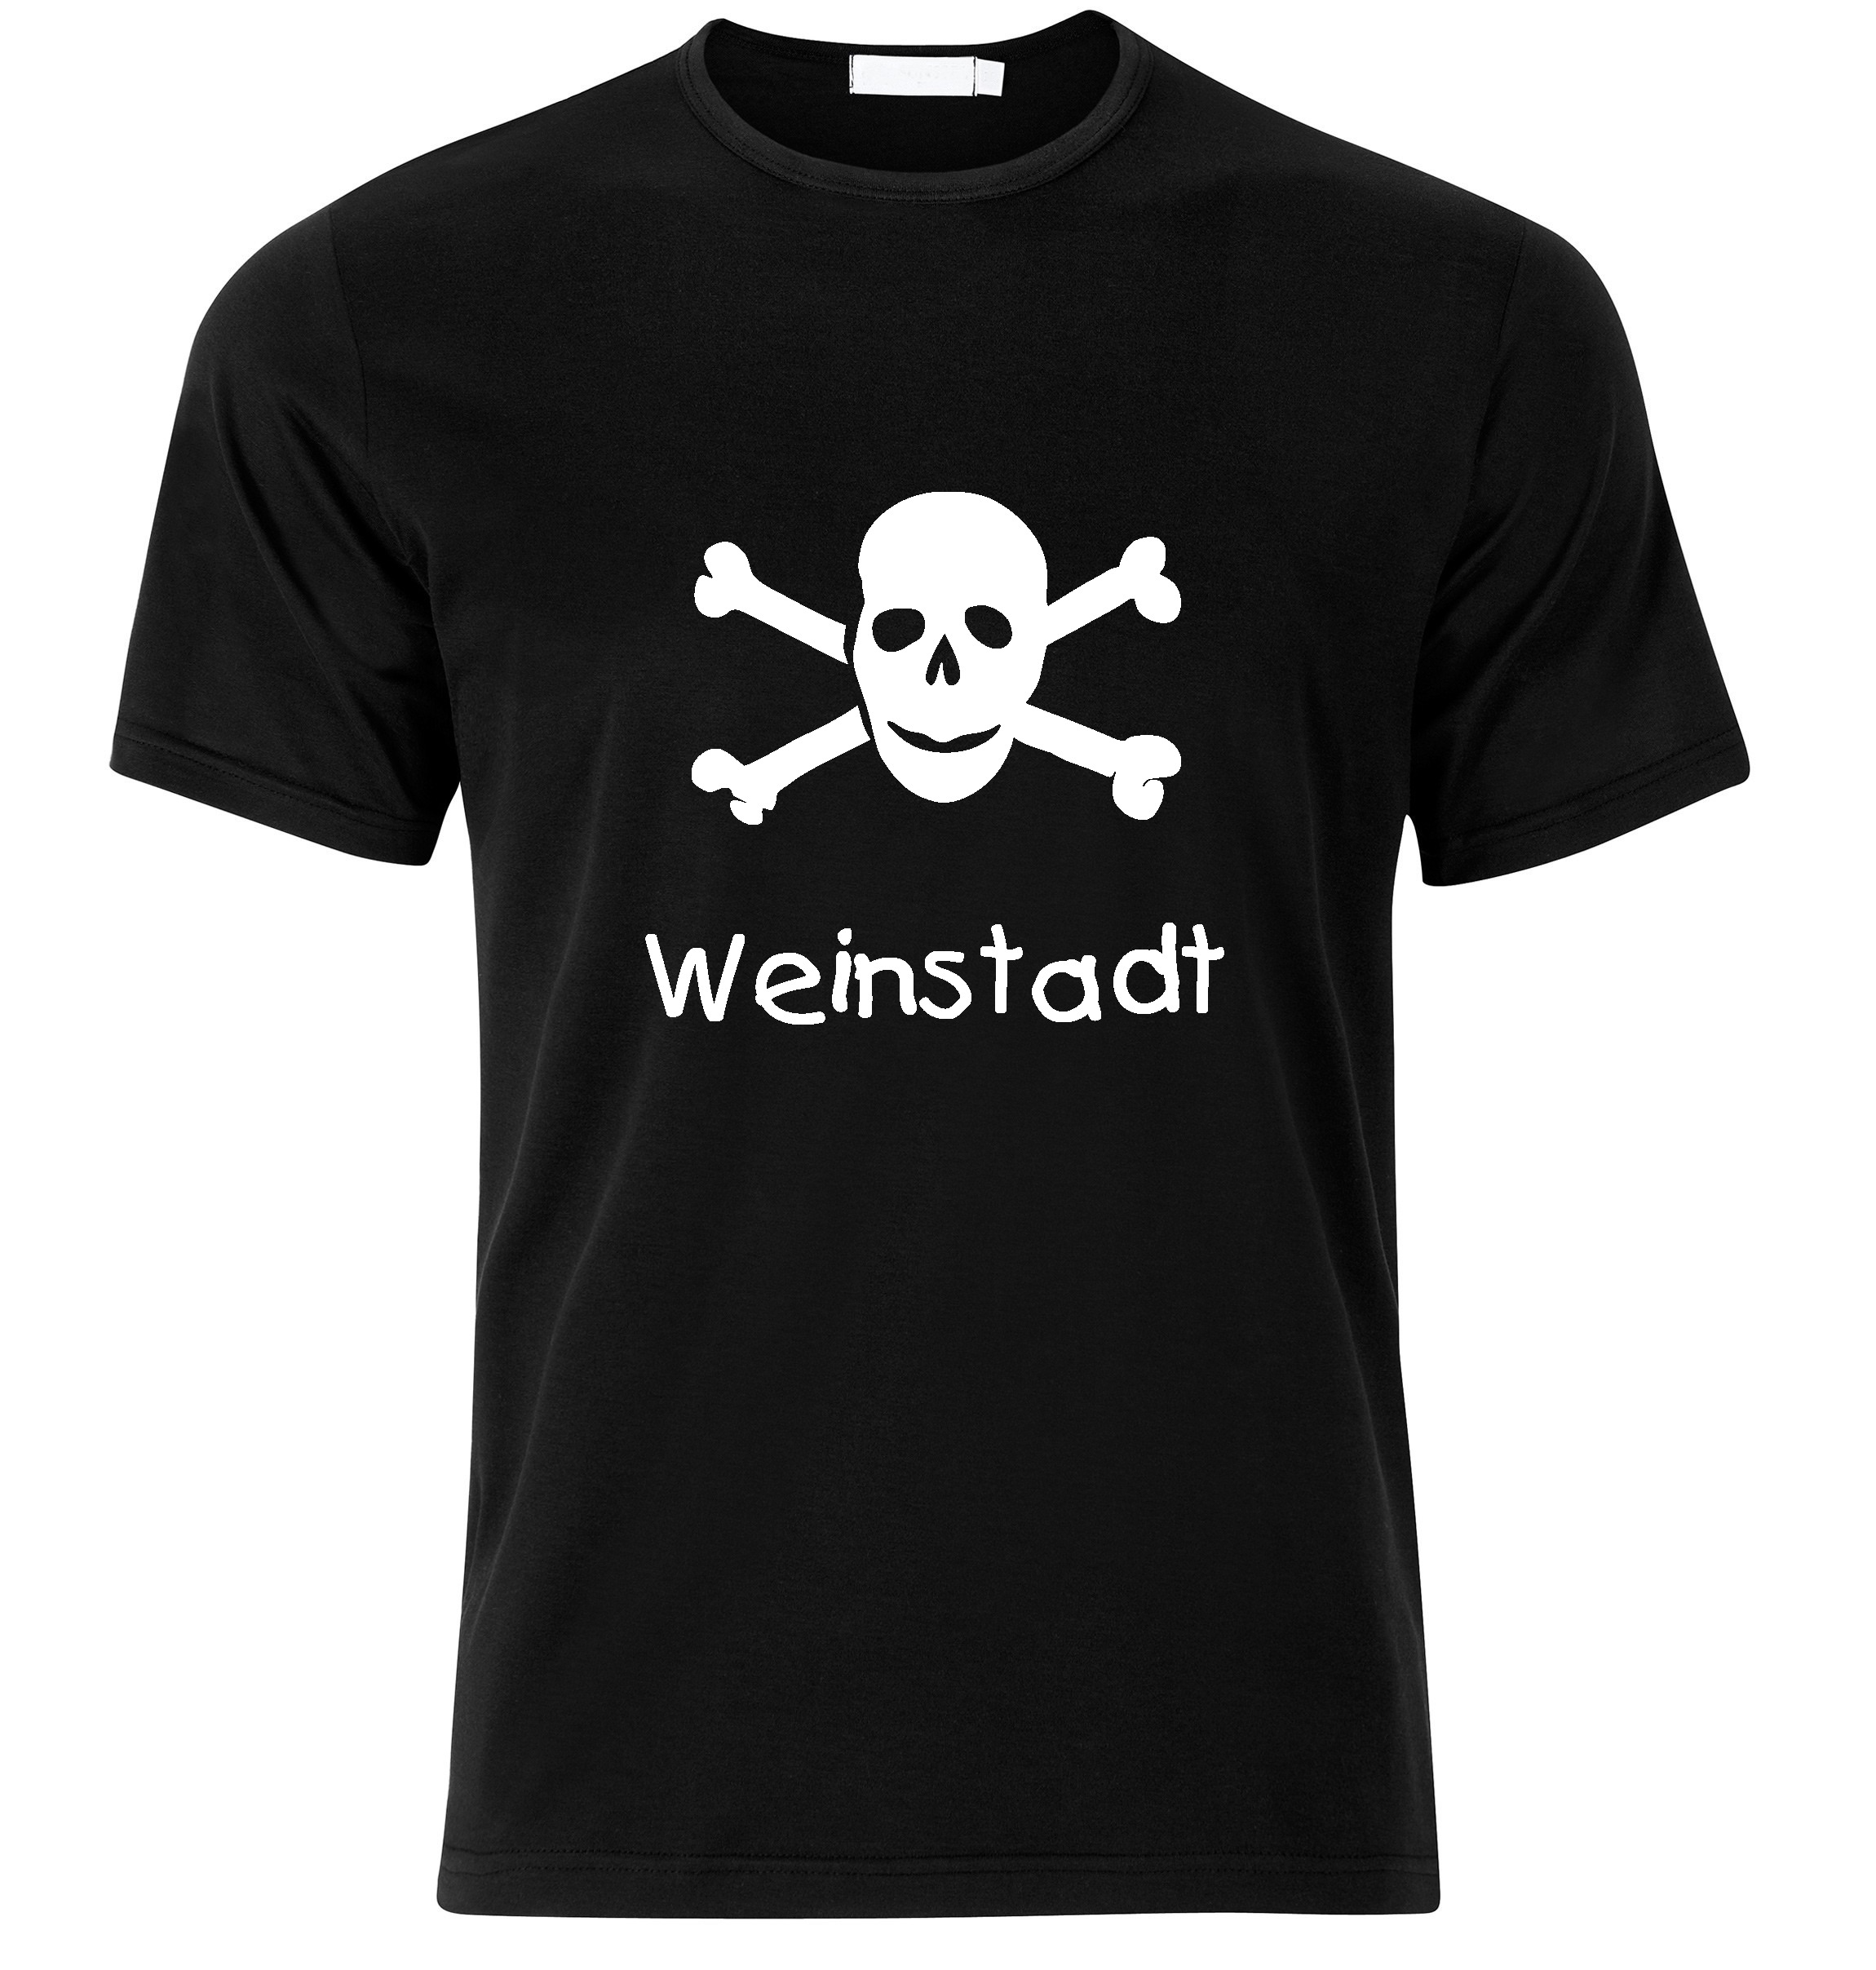 T-Shirt Weinstadt Jolly Roger, Totenkopf